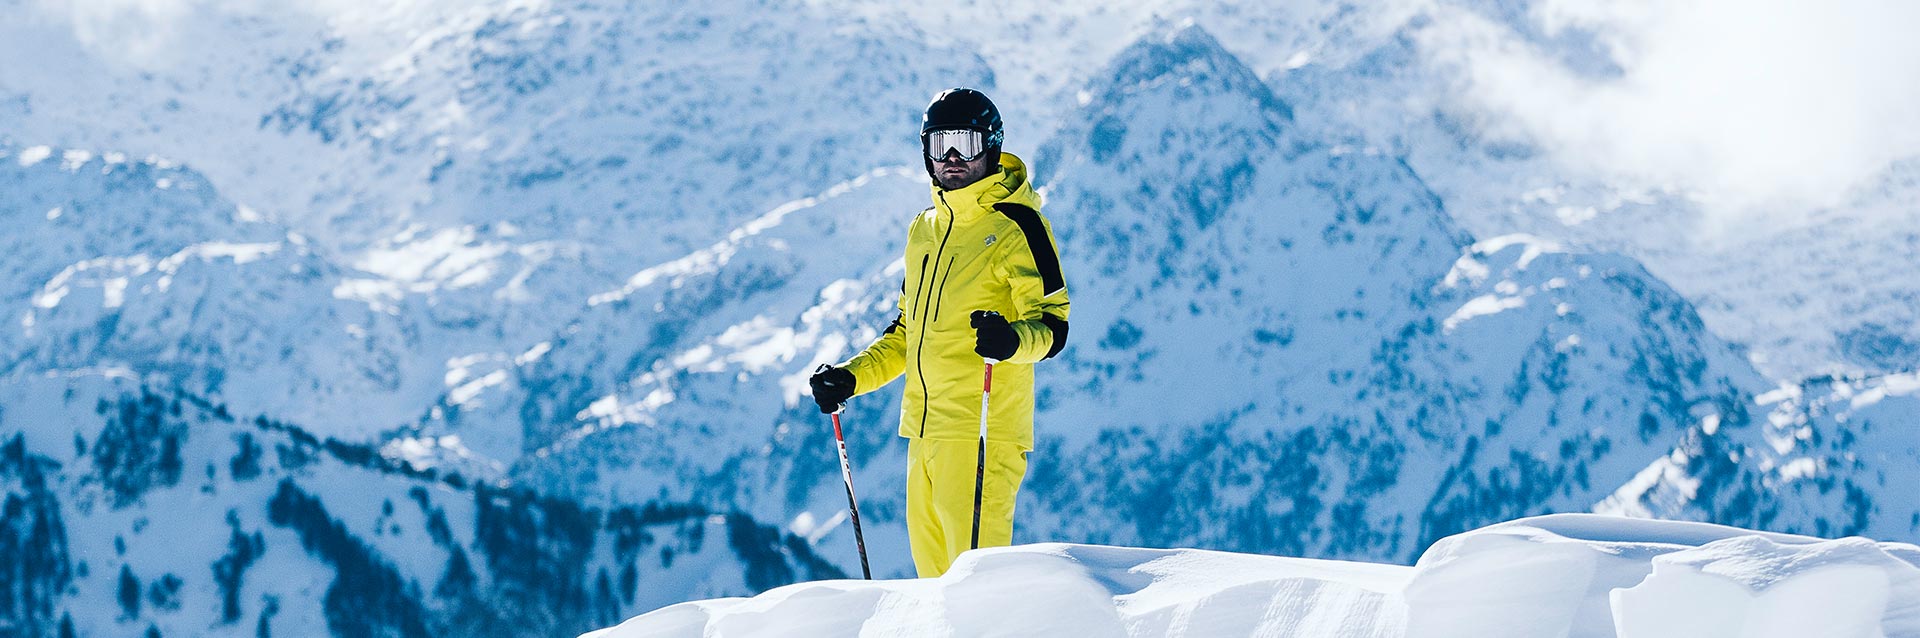 Kurtka i spodnie na narty - jak wybrać